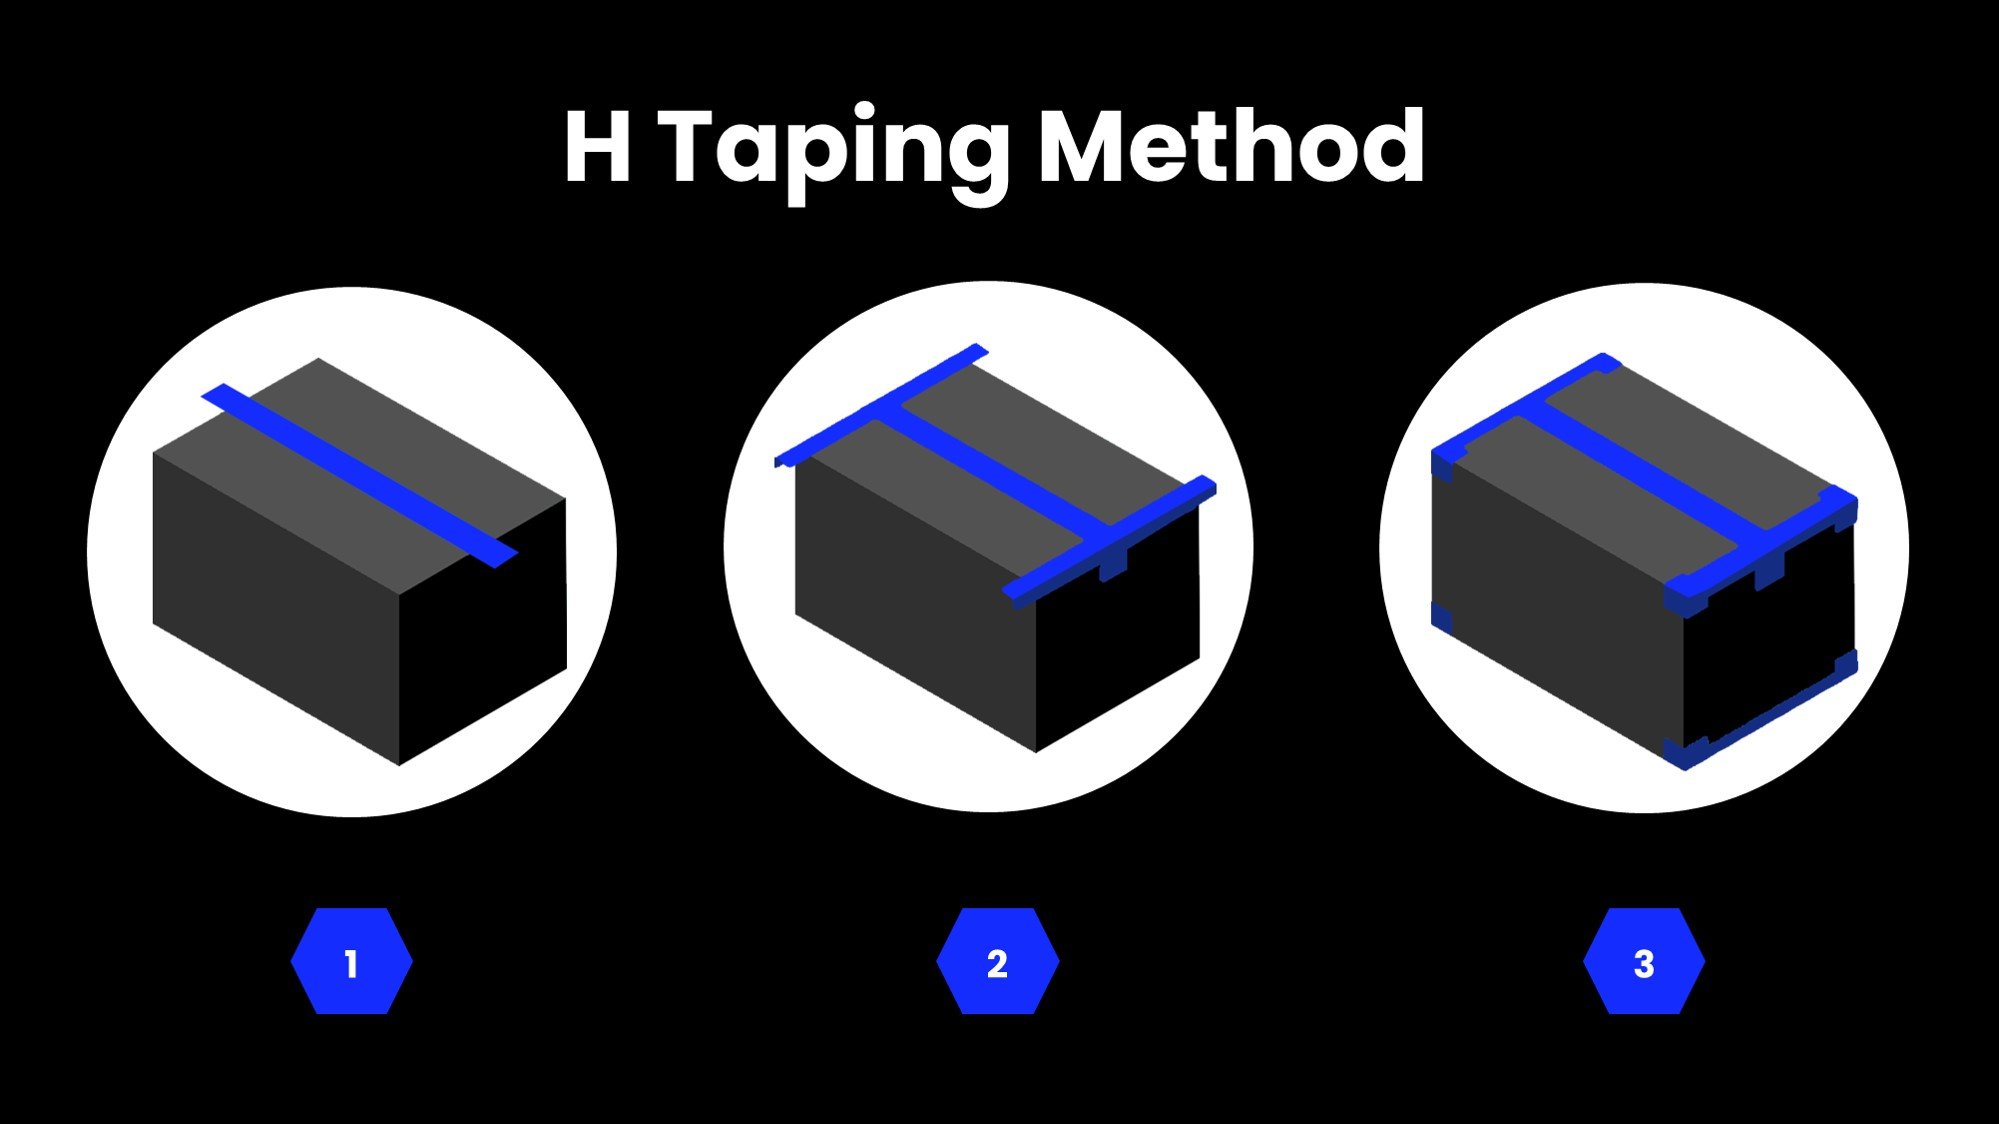 H_Taping_Method.jpg